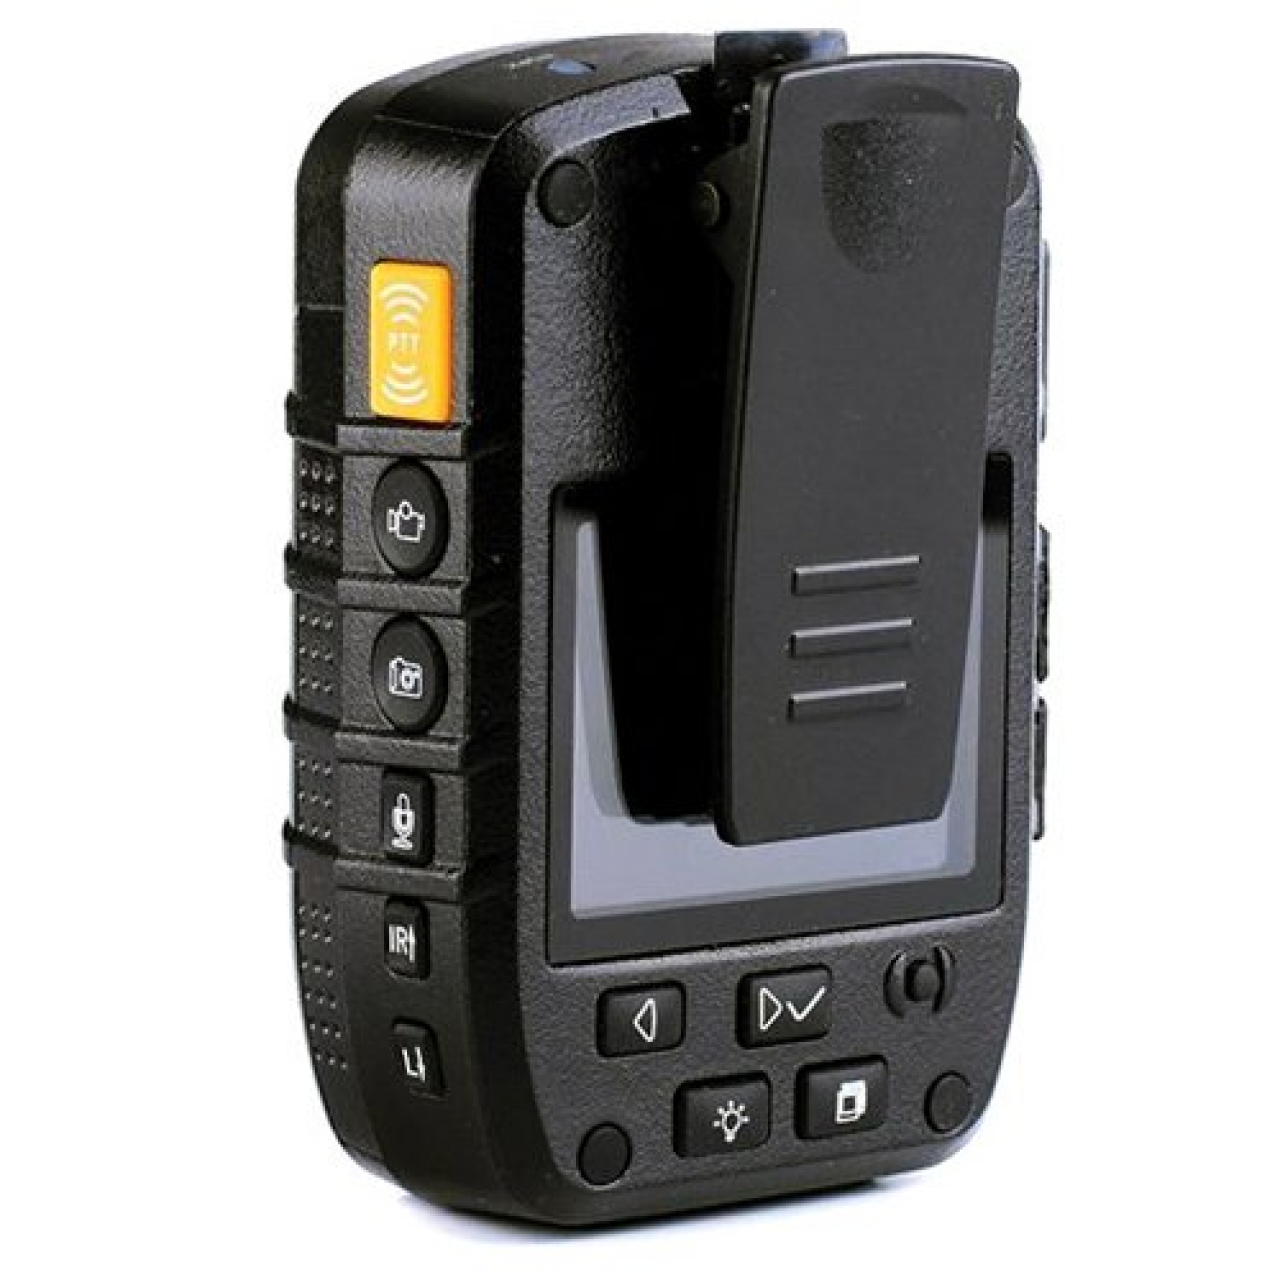 PATROLEYES SC-DV1 1080P Güvenlik Yaka Kamerası 16Megapiksel (Polis,Askeri,vb Kullanım İçin)